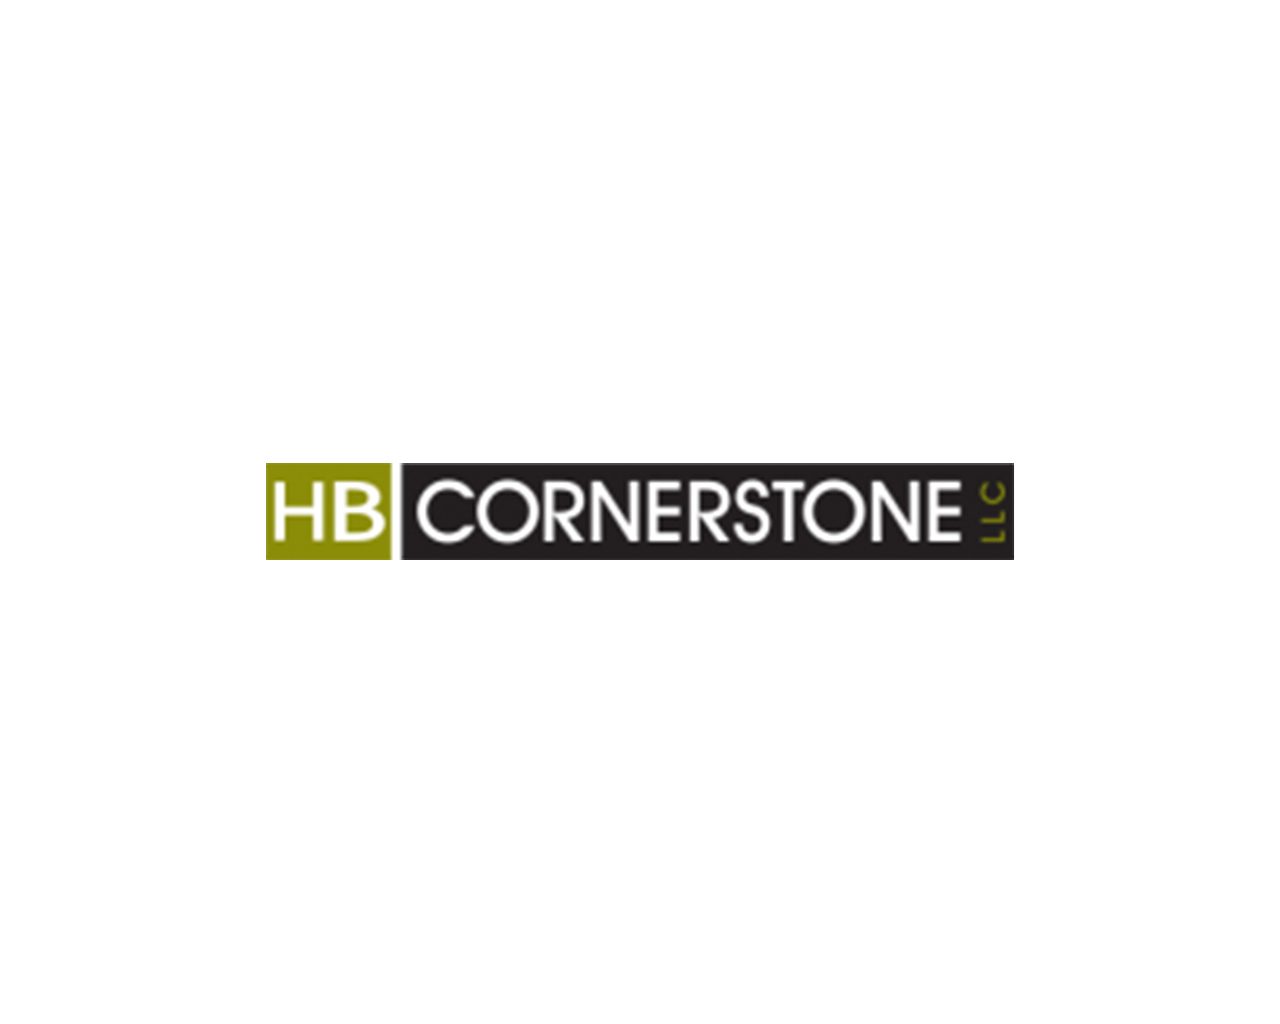 HB Cornerstone